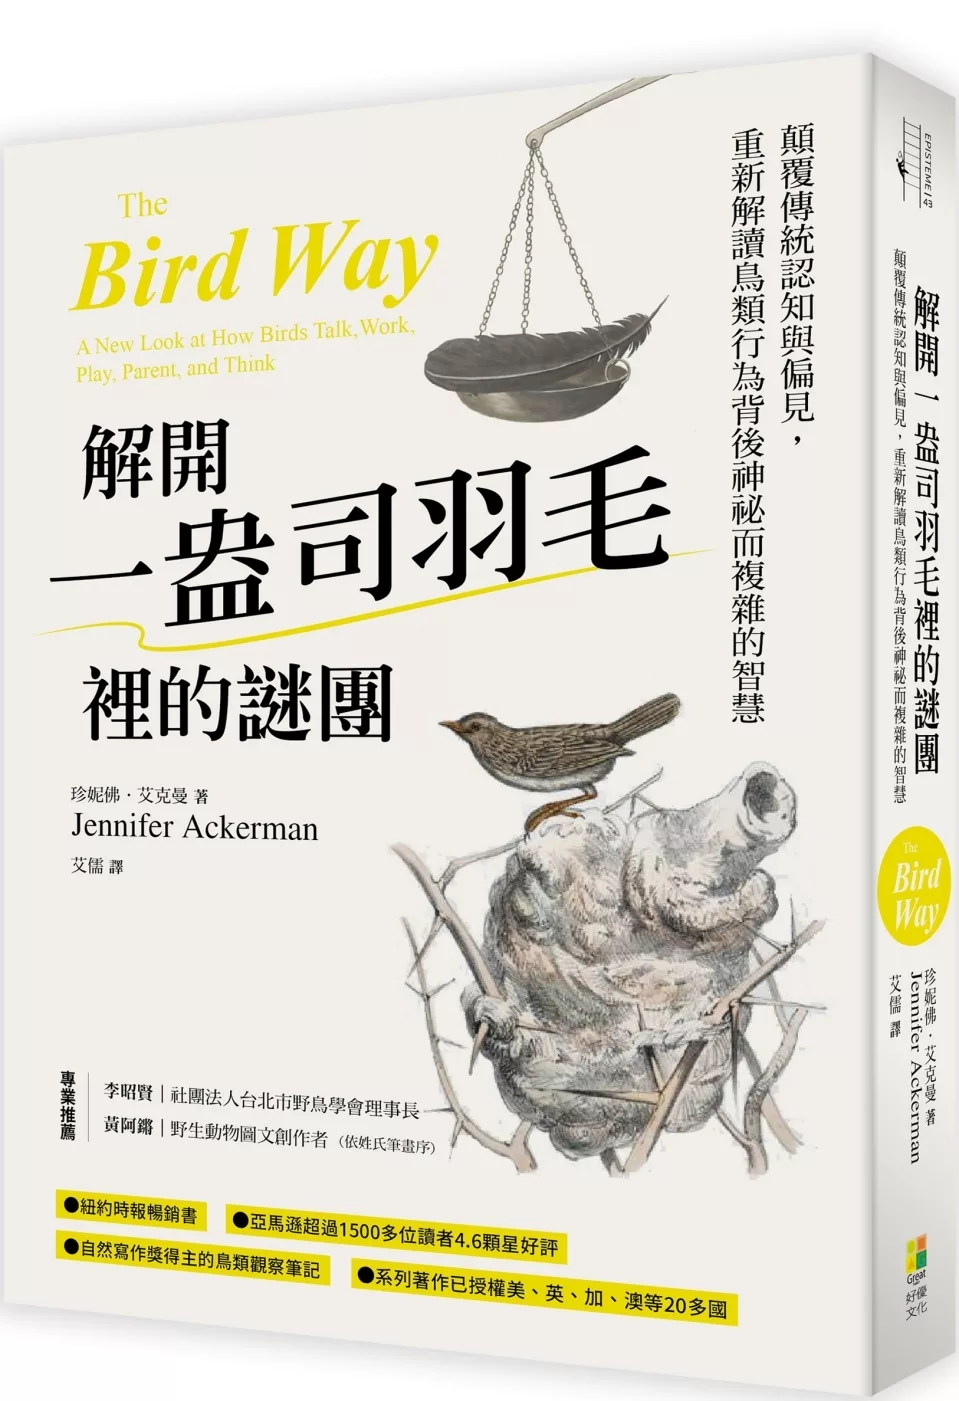 解開一盎司羽毛裡的謎團：顛覆傳統認知與偏見，重新解讀鳥類行為背後神祕而複雜的智慧